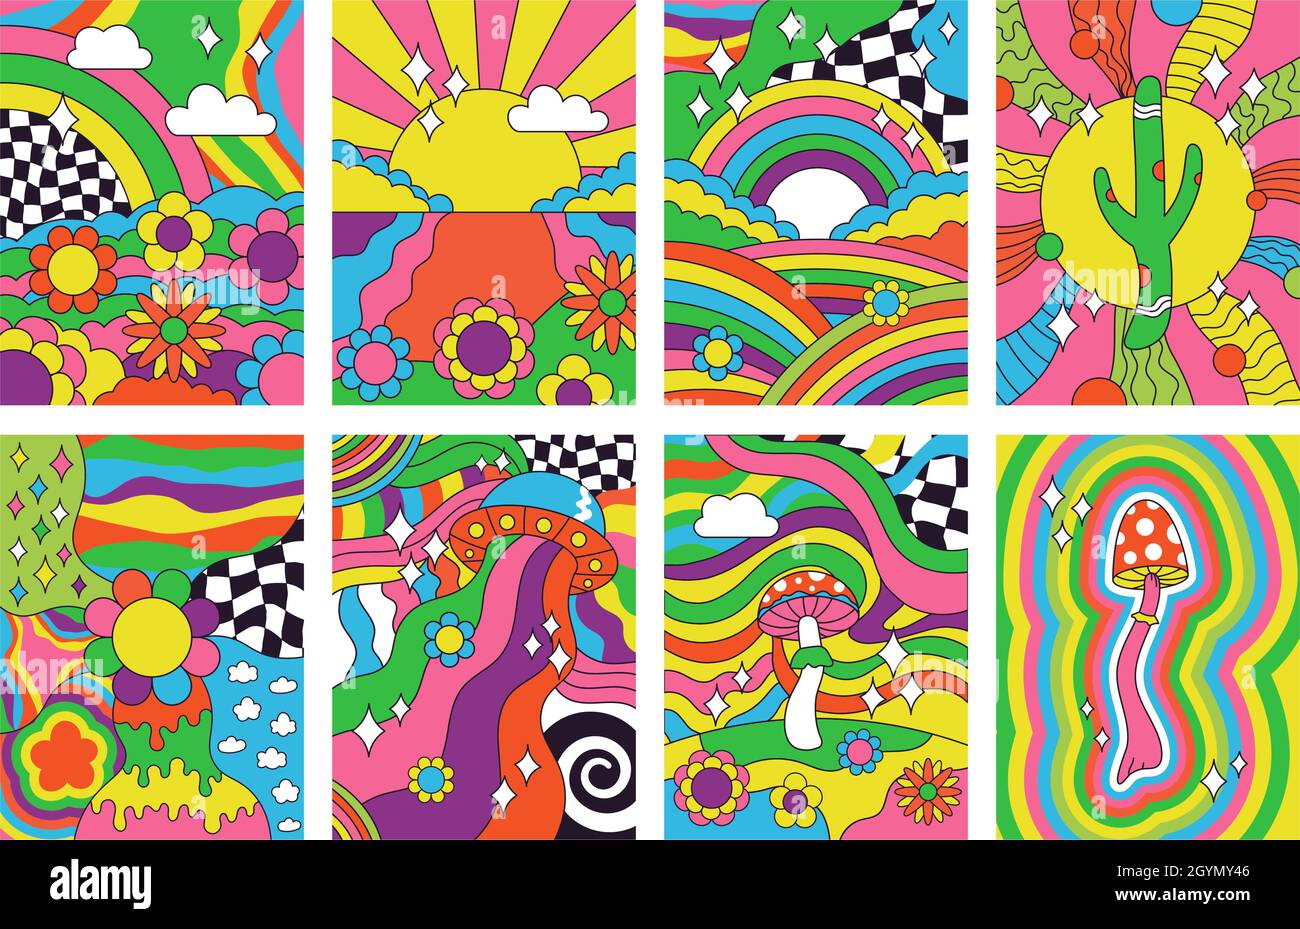 Groovy rétro vibes, les années 70 hippie style psychédélique art affiches.Résumé psychédélique hippie arc-en-ciel paysage 60s affiches vecteur illustration ensemble Illustration de Vecteur